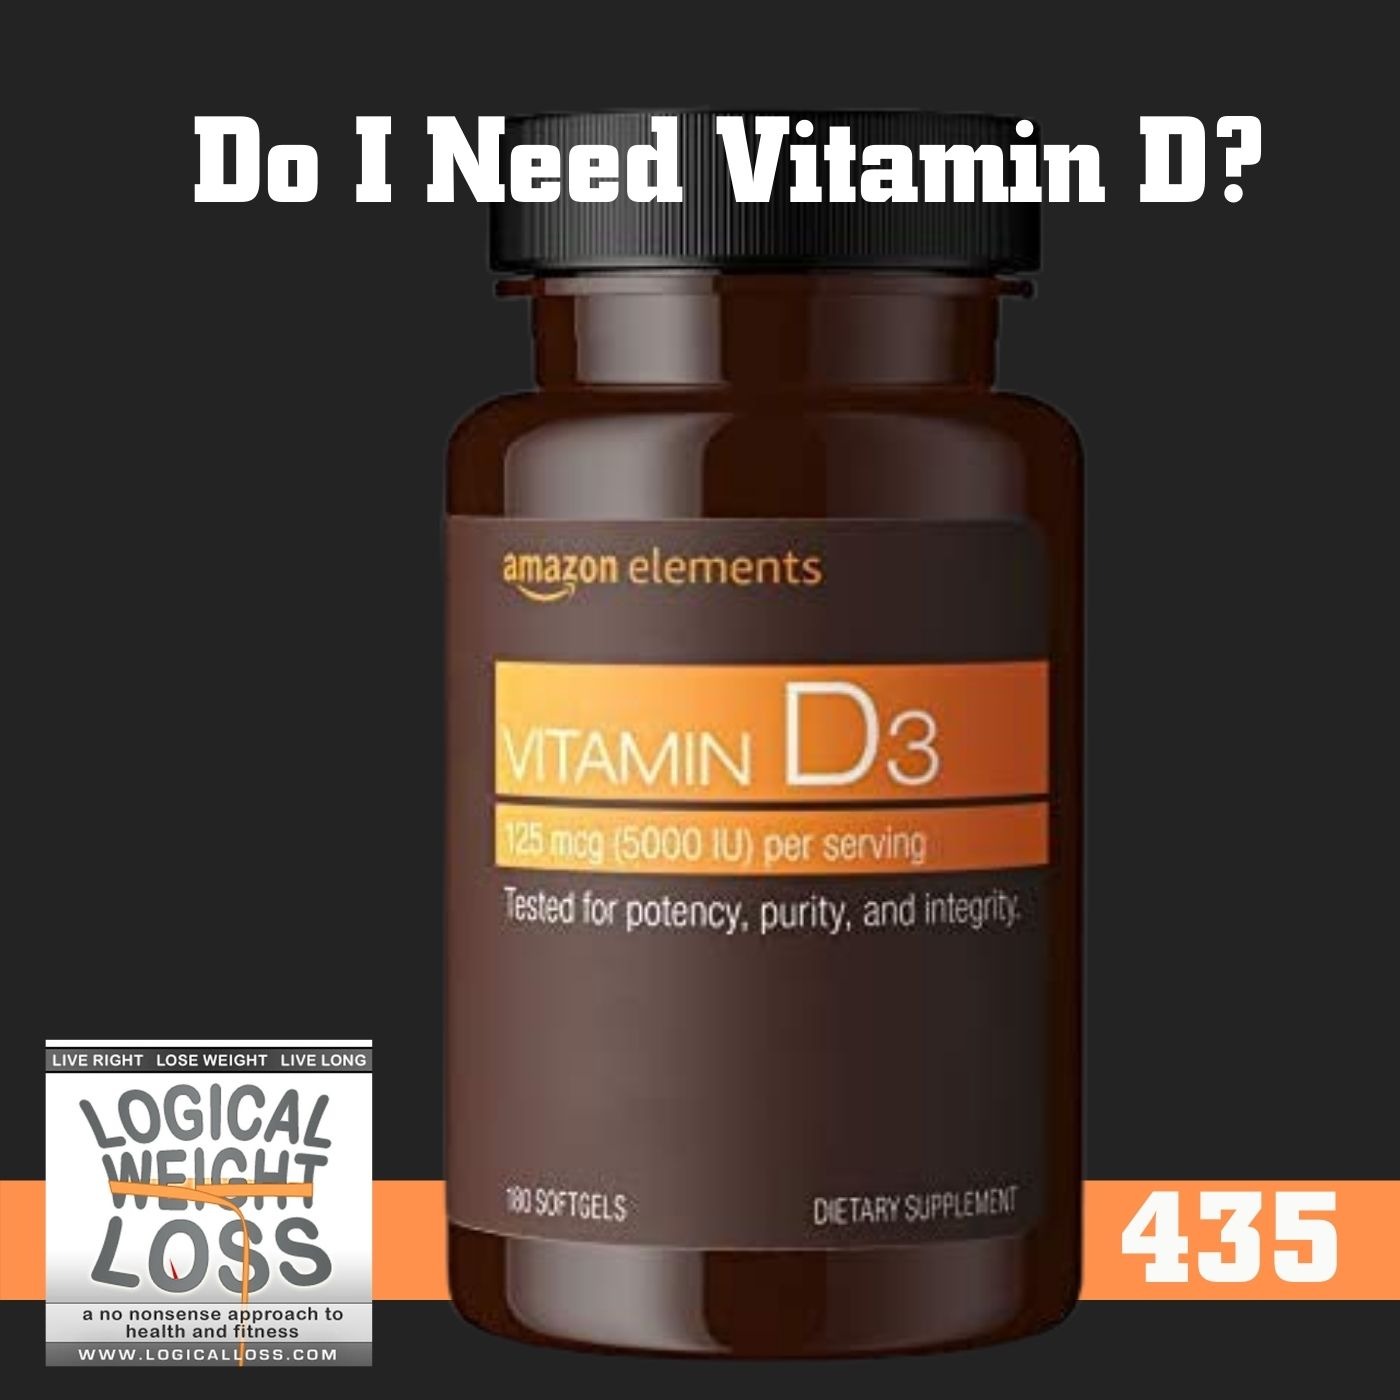 Do I Need Vitamin D?